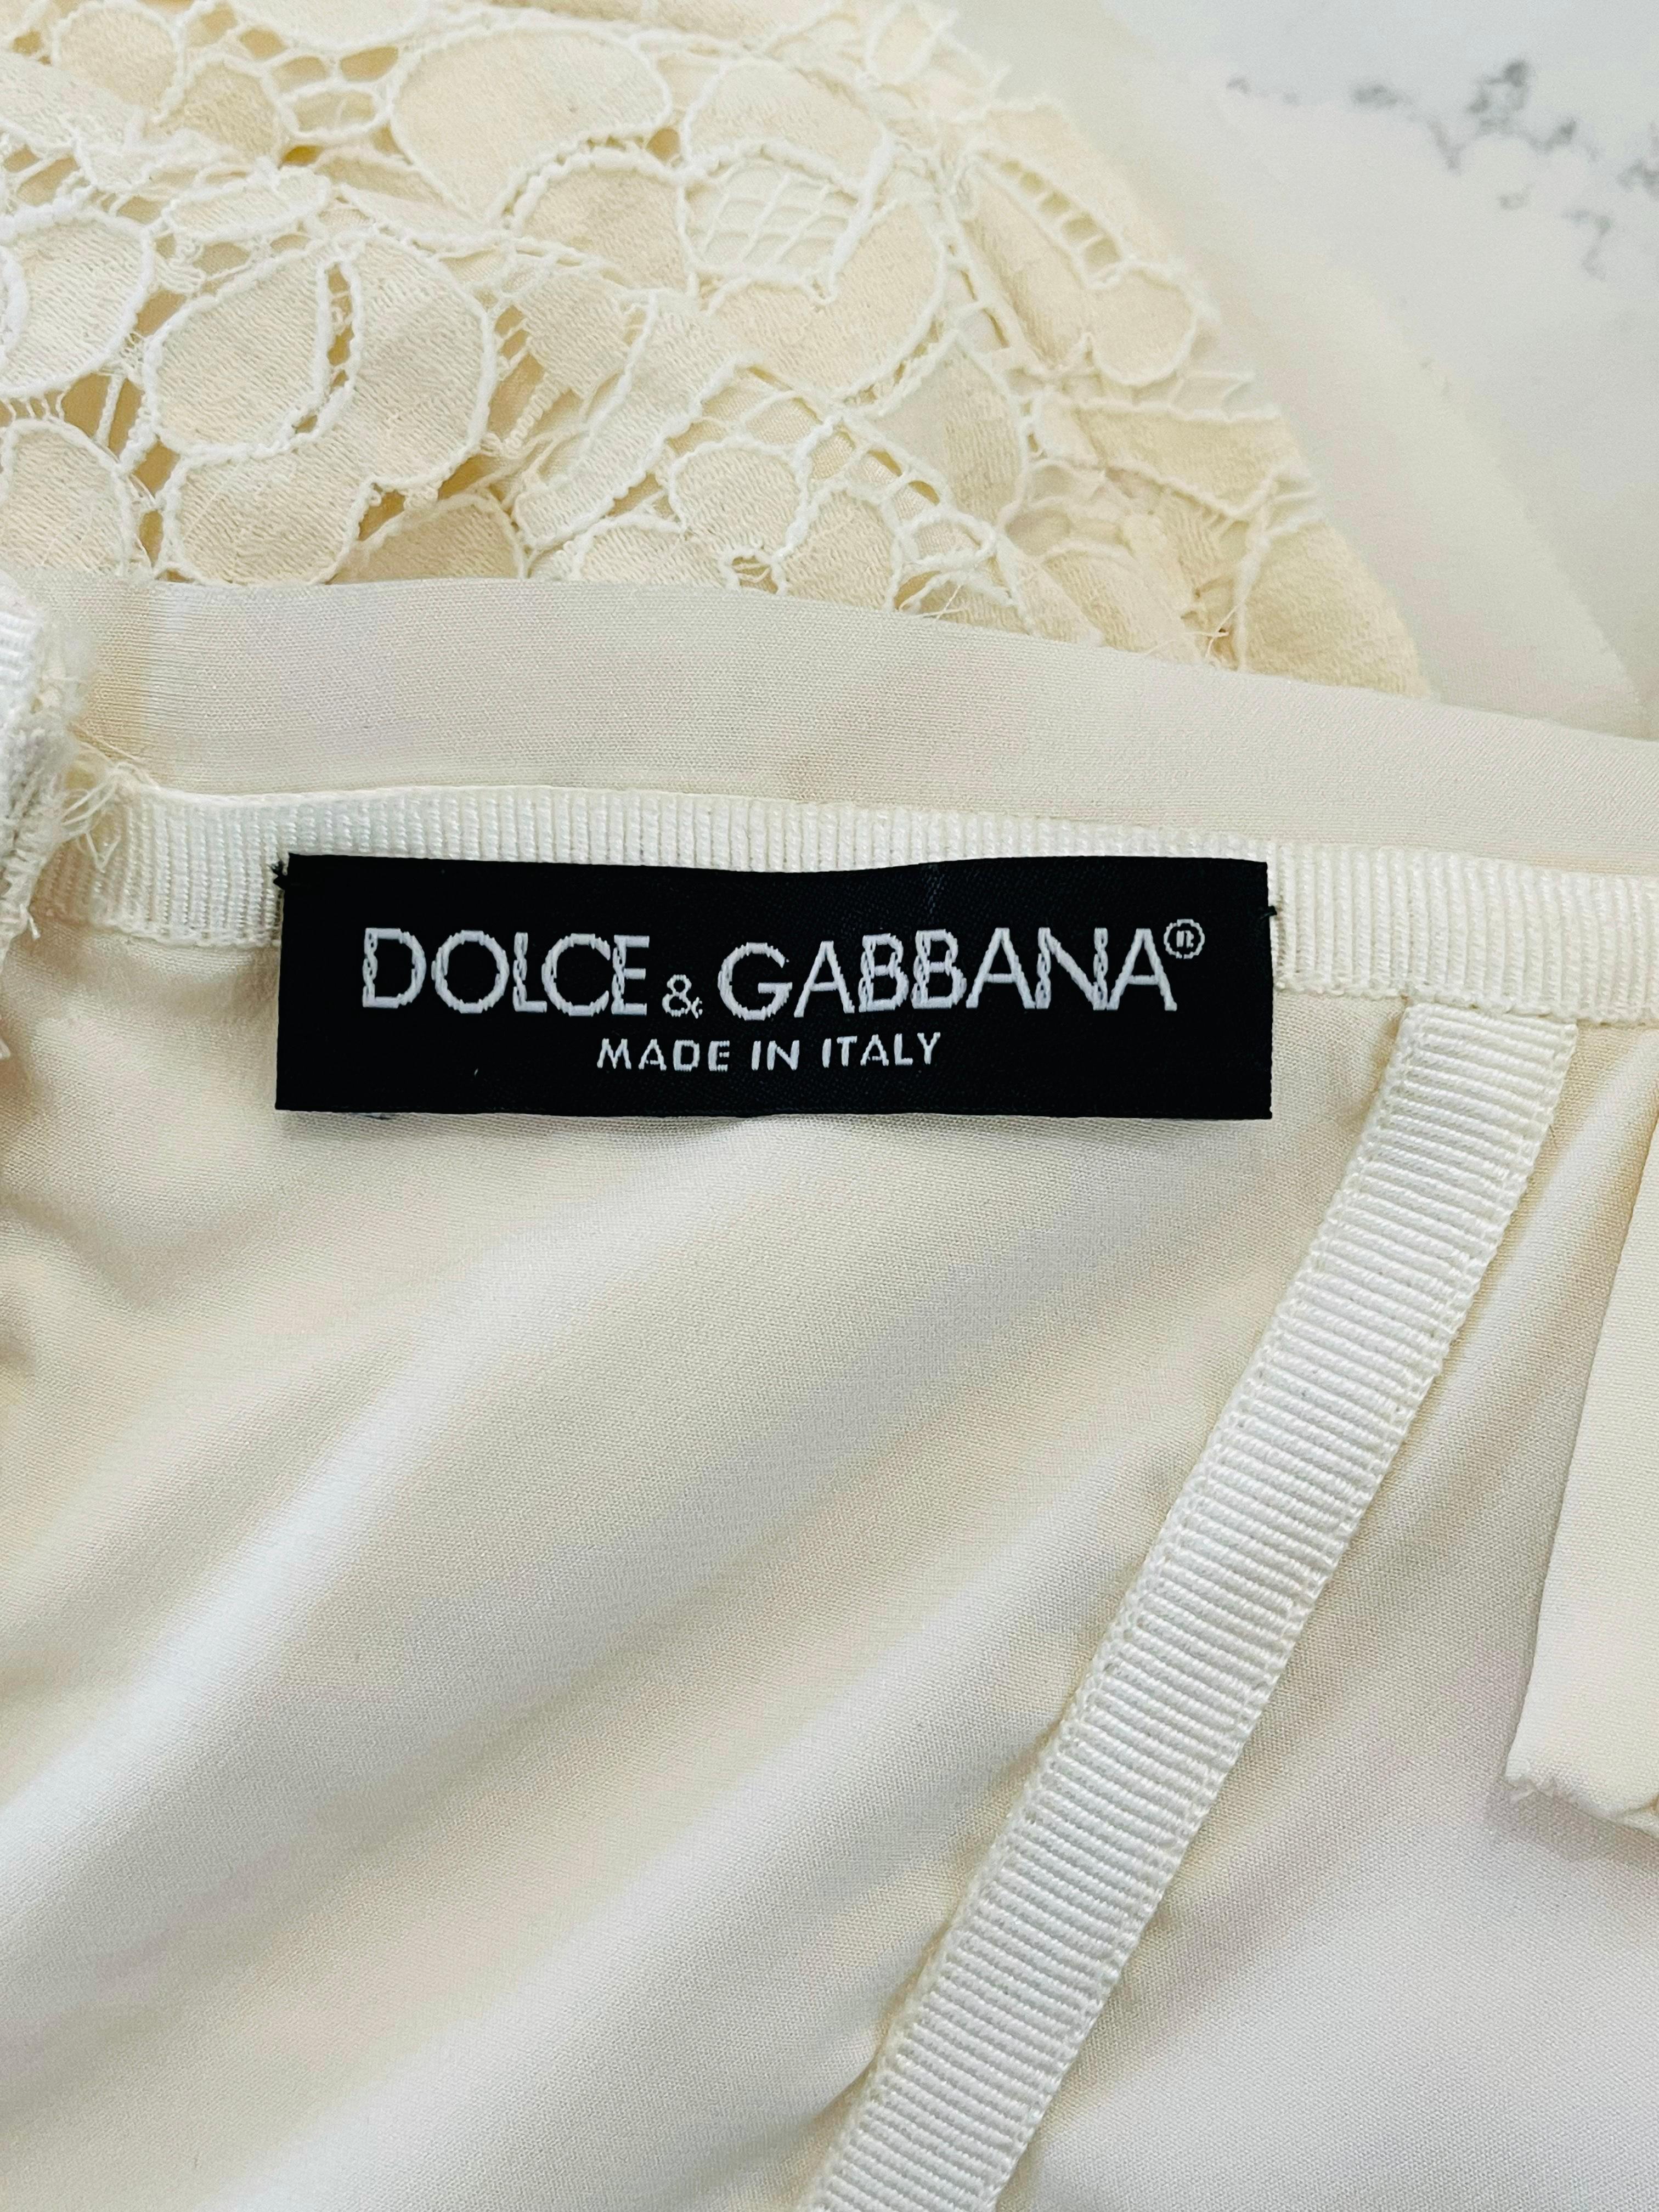 Dolce & Gabbana Cotton Lace Corset For Sale 2